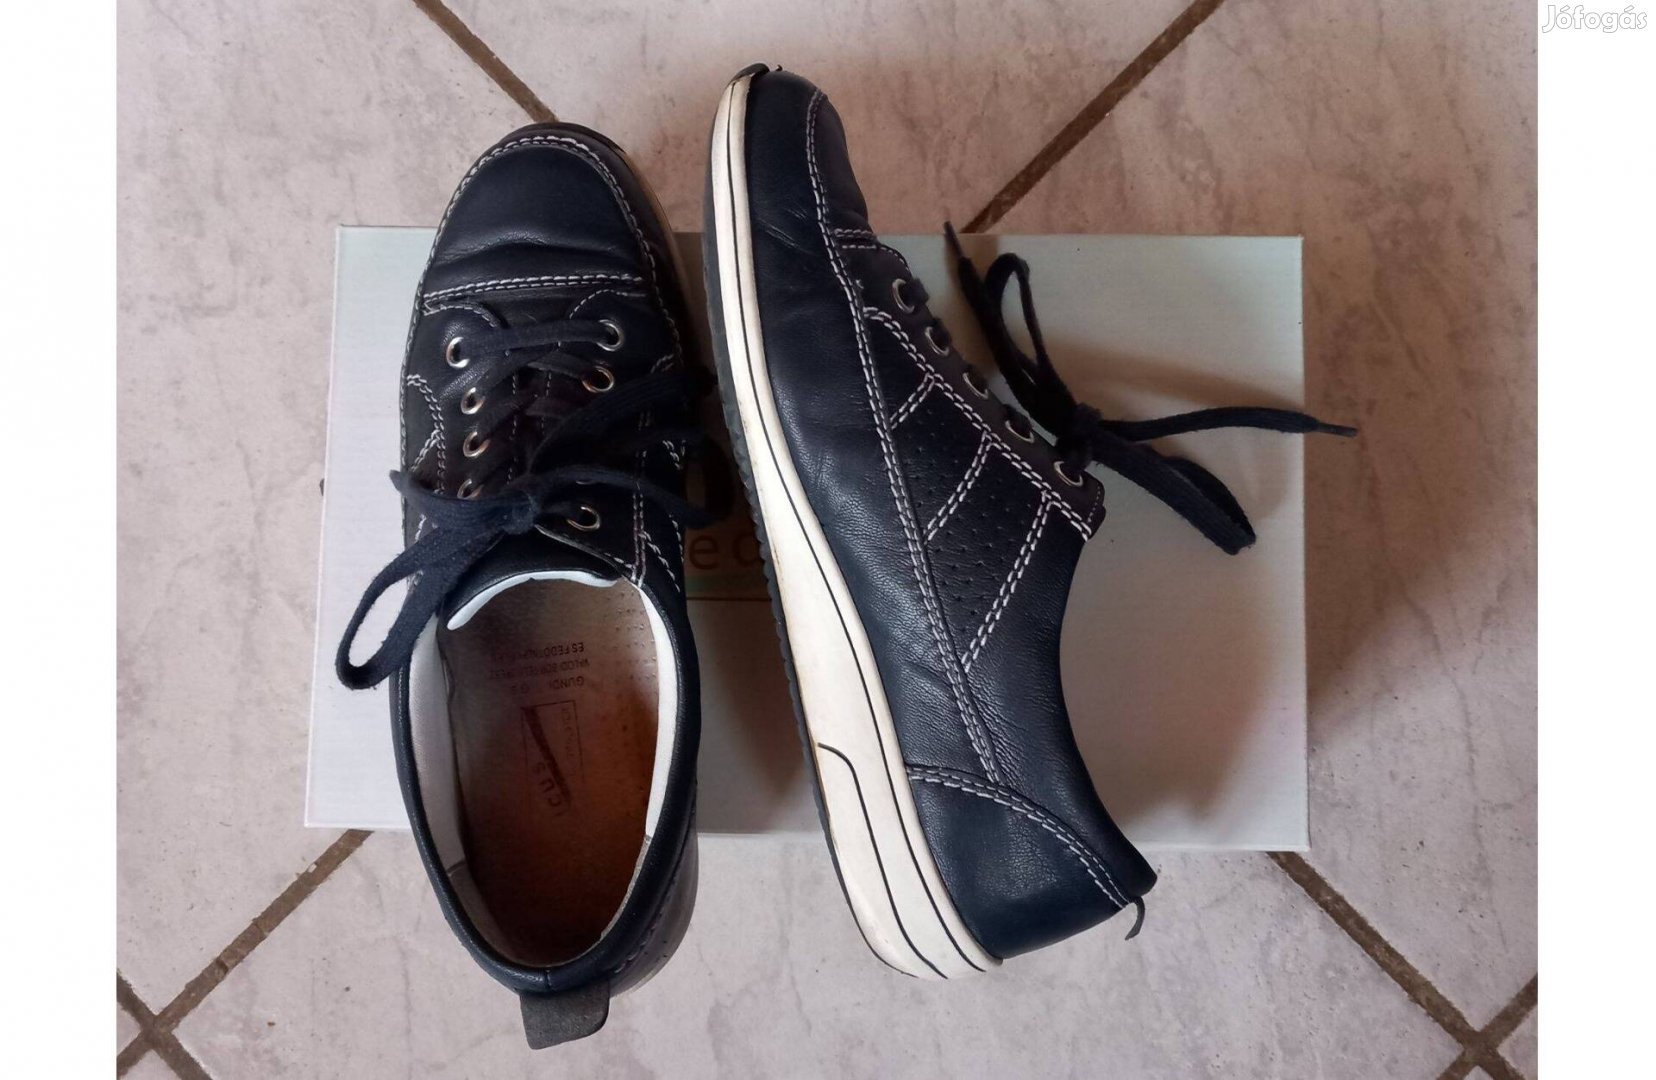 Medicus kényelmi bőr cipő 38-as sötétkék-fehér